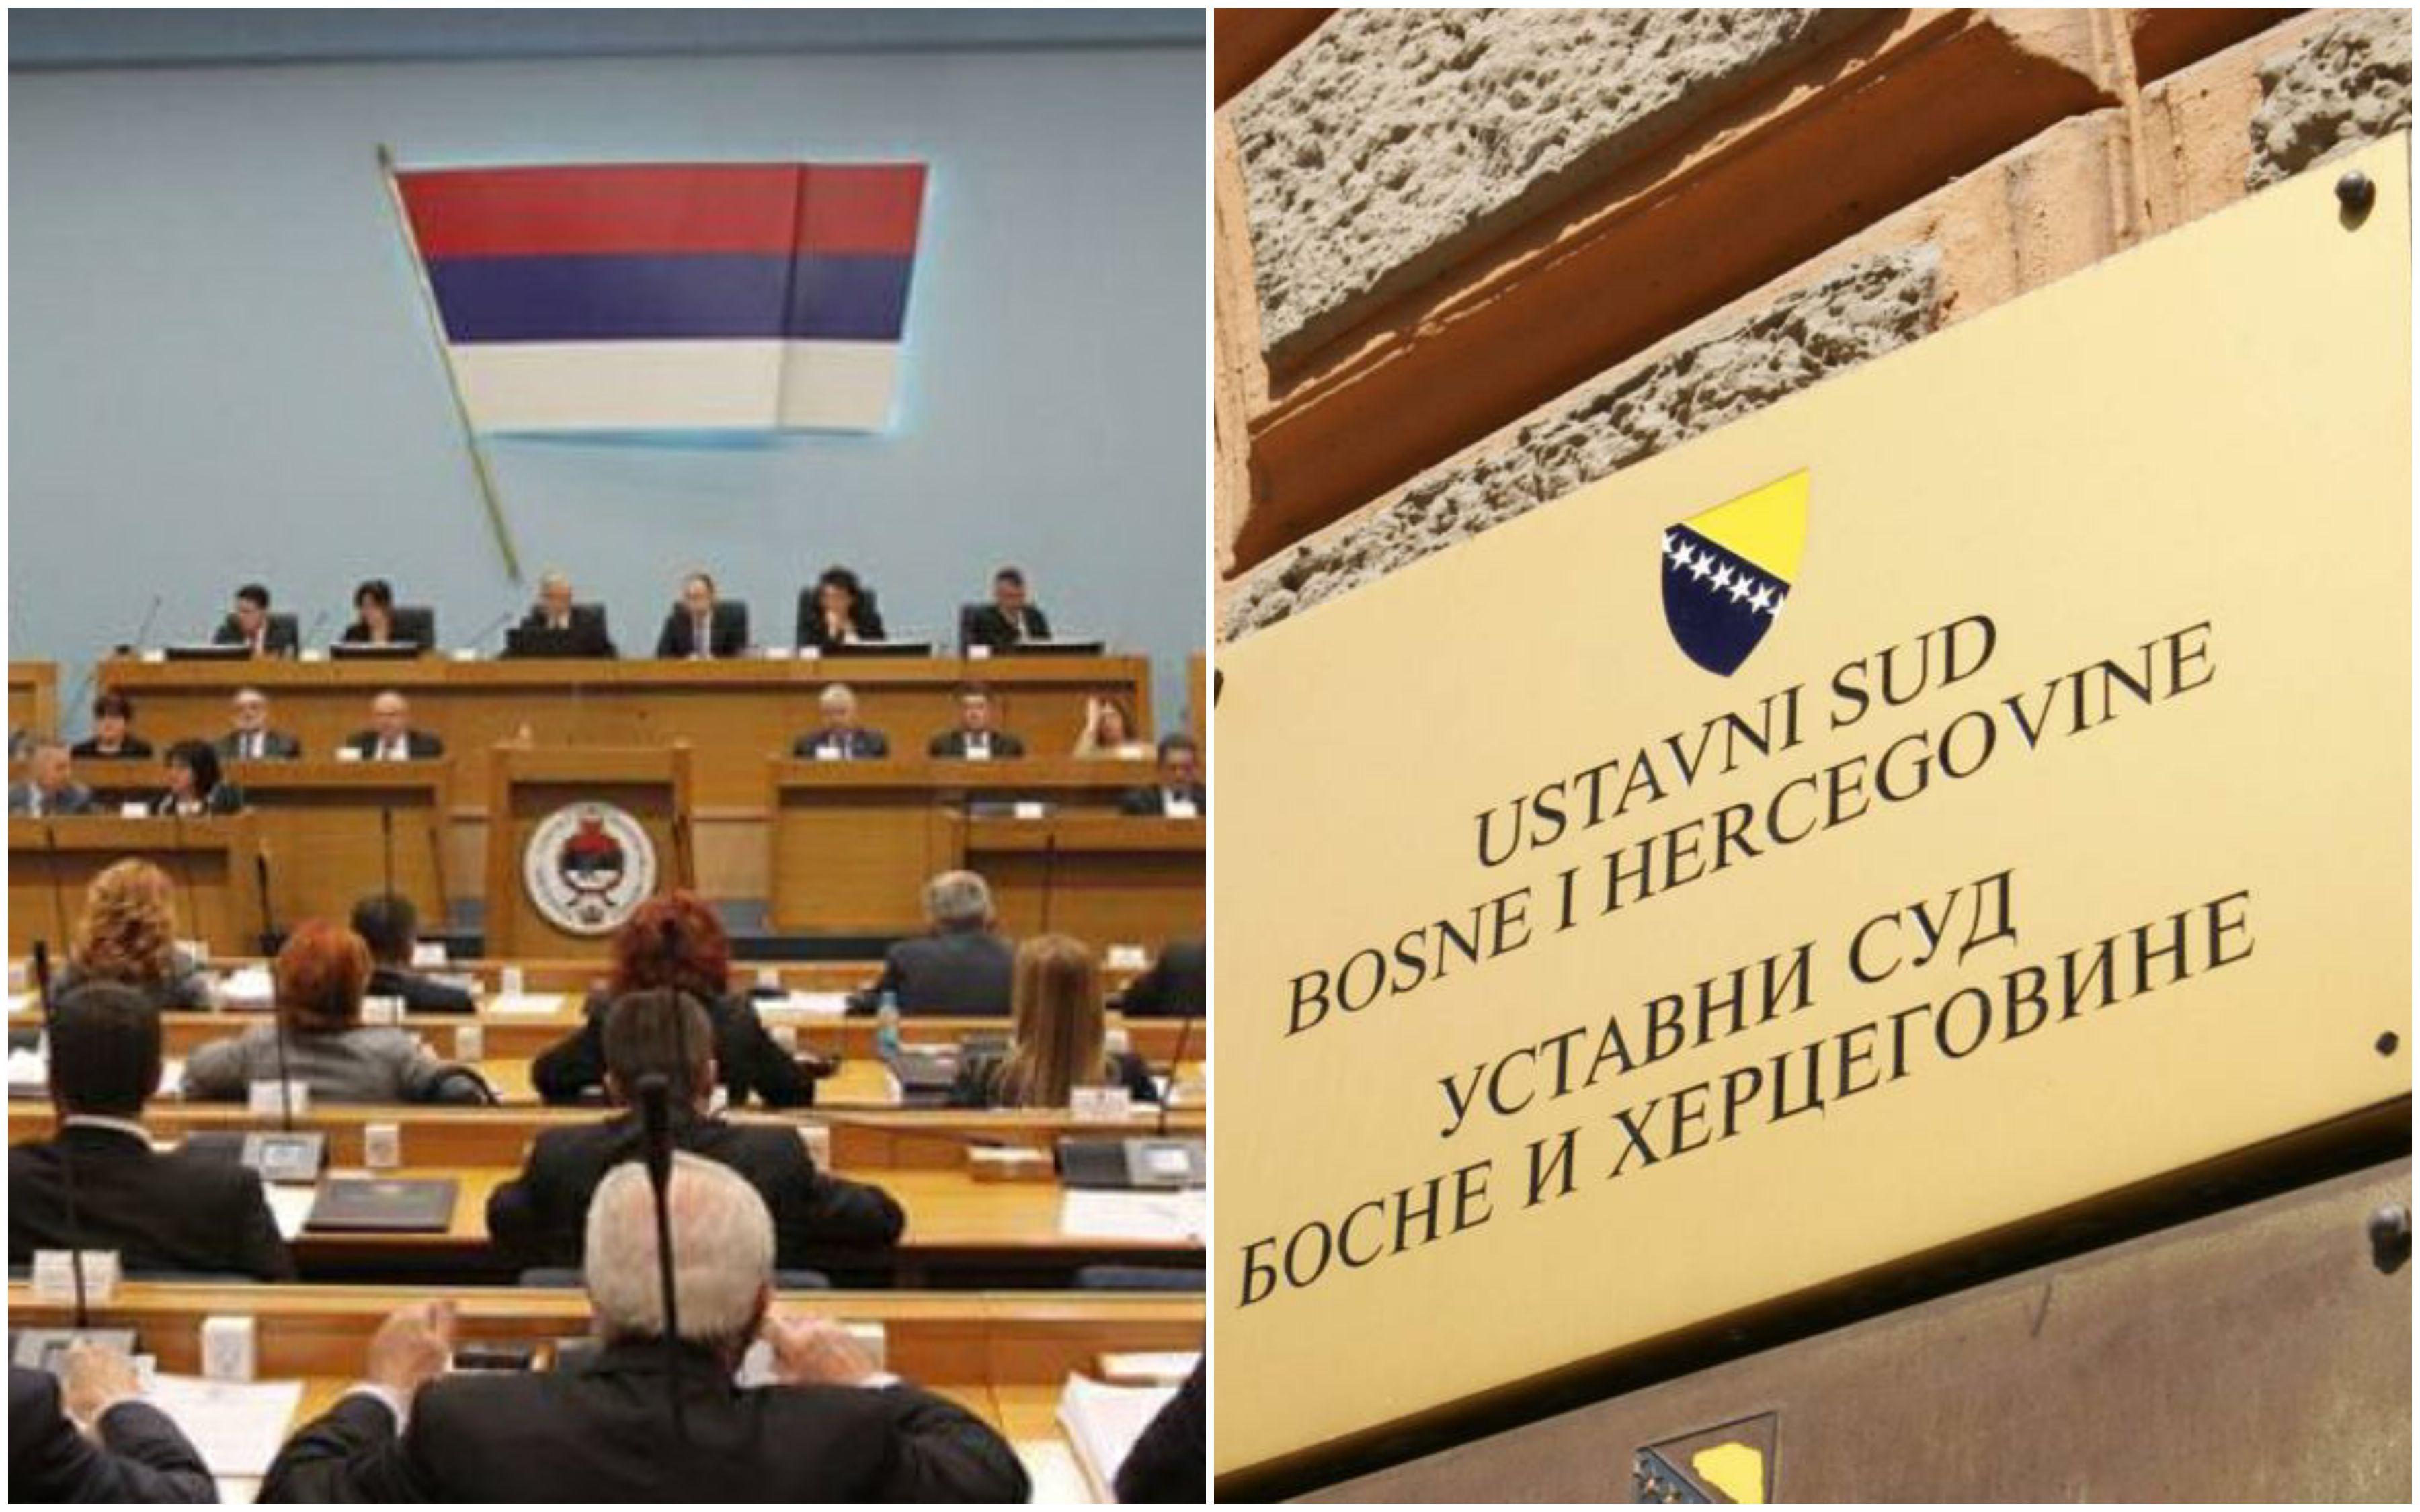 Ustavni sud BiH ukinuo odluke NSRS-a - Avaz